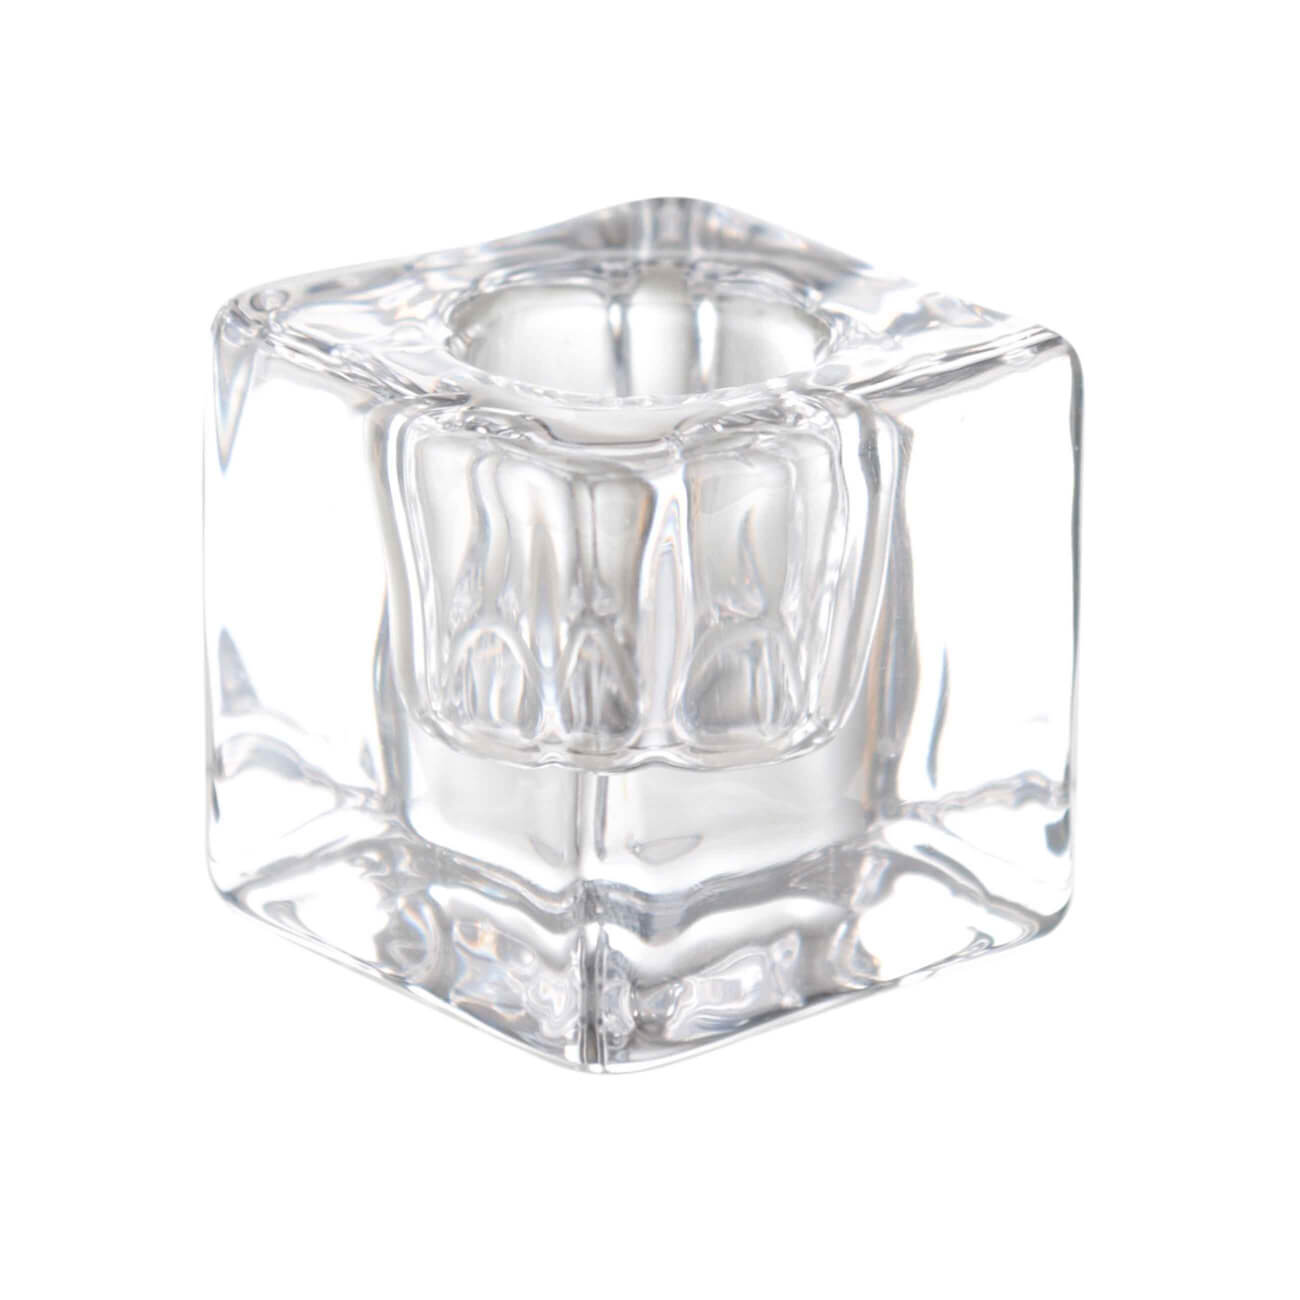 подсвечник 8 см для тонкой свечи стекло cube Подсвечник, 4 см, для тонкой свечи, стекло, Cube